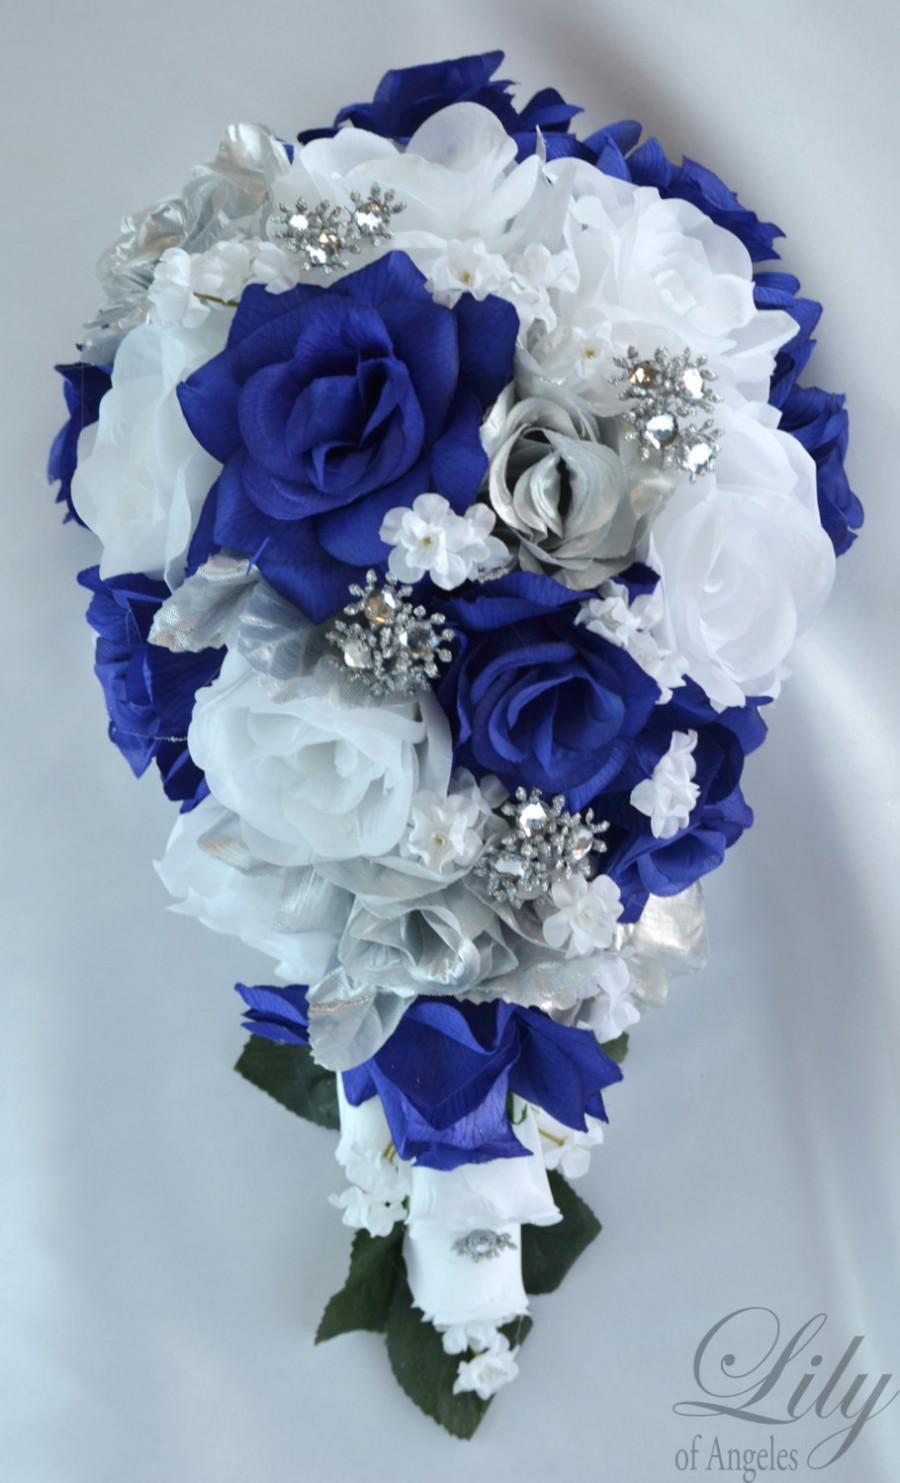 زفاف - 17 Piece Package Wedding Cascade Bouquet Bride Silk Flowers Bridal Bouquets Decorations Teardrop Navy BLUE SILVER "Lily of Angeles" BLSI01